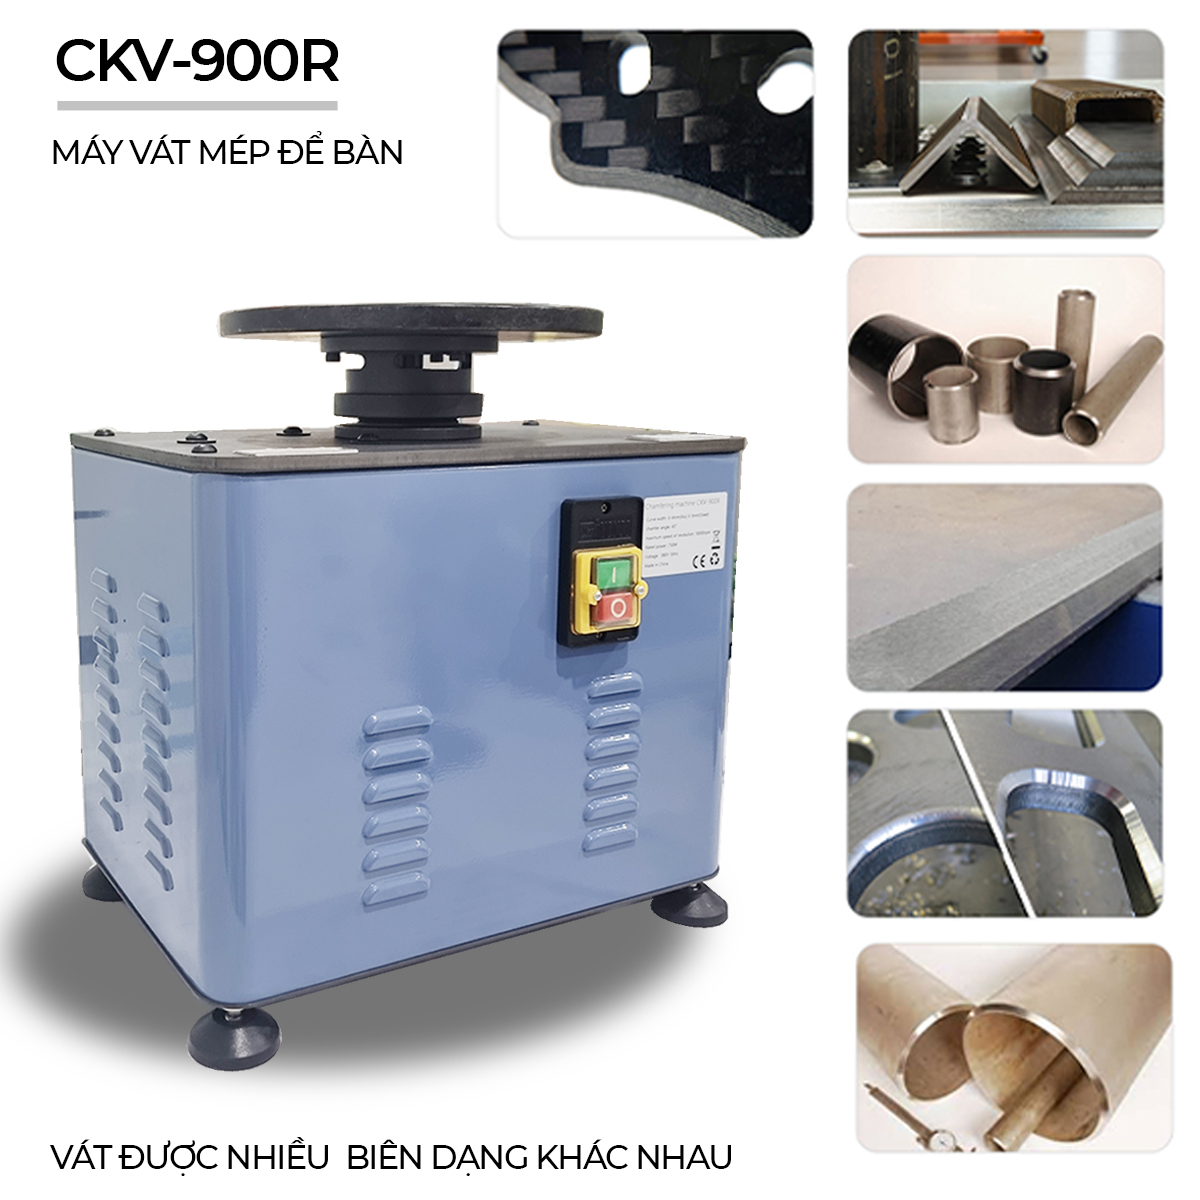 Ngoại quan của máy vát mép CKV-900R